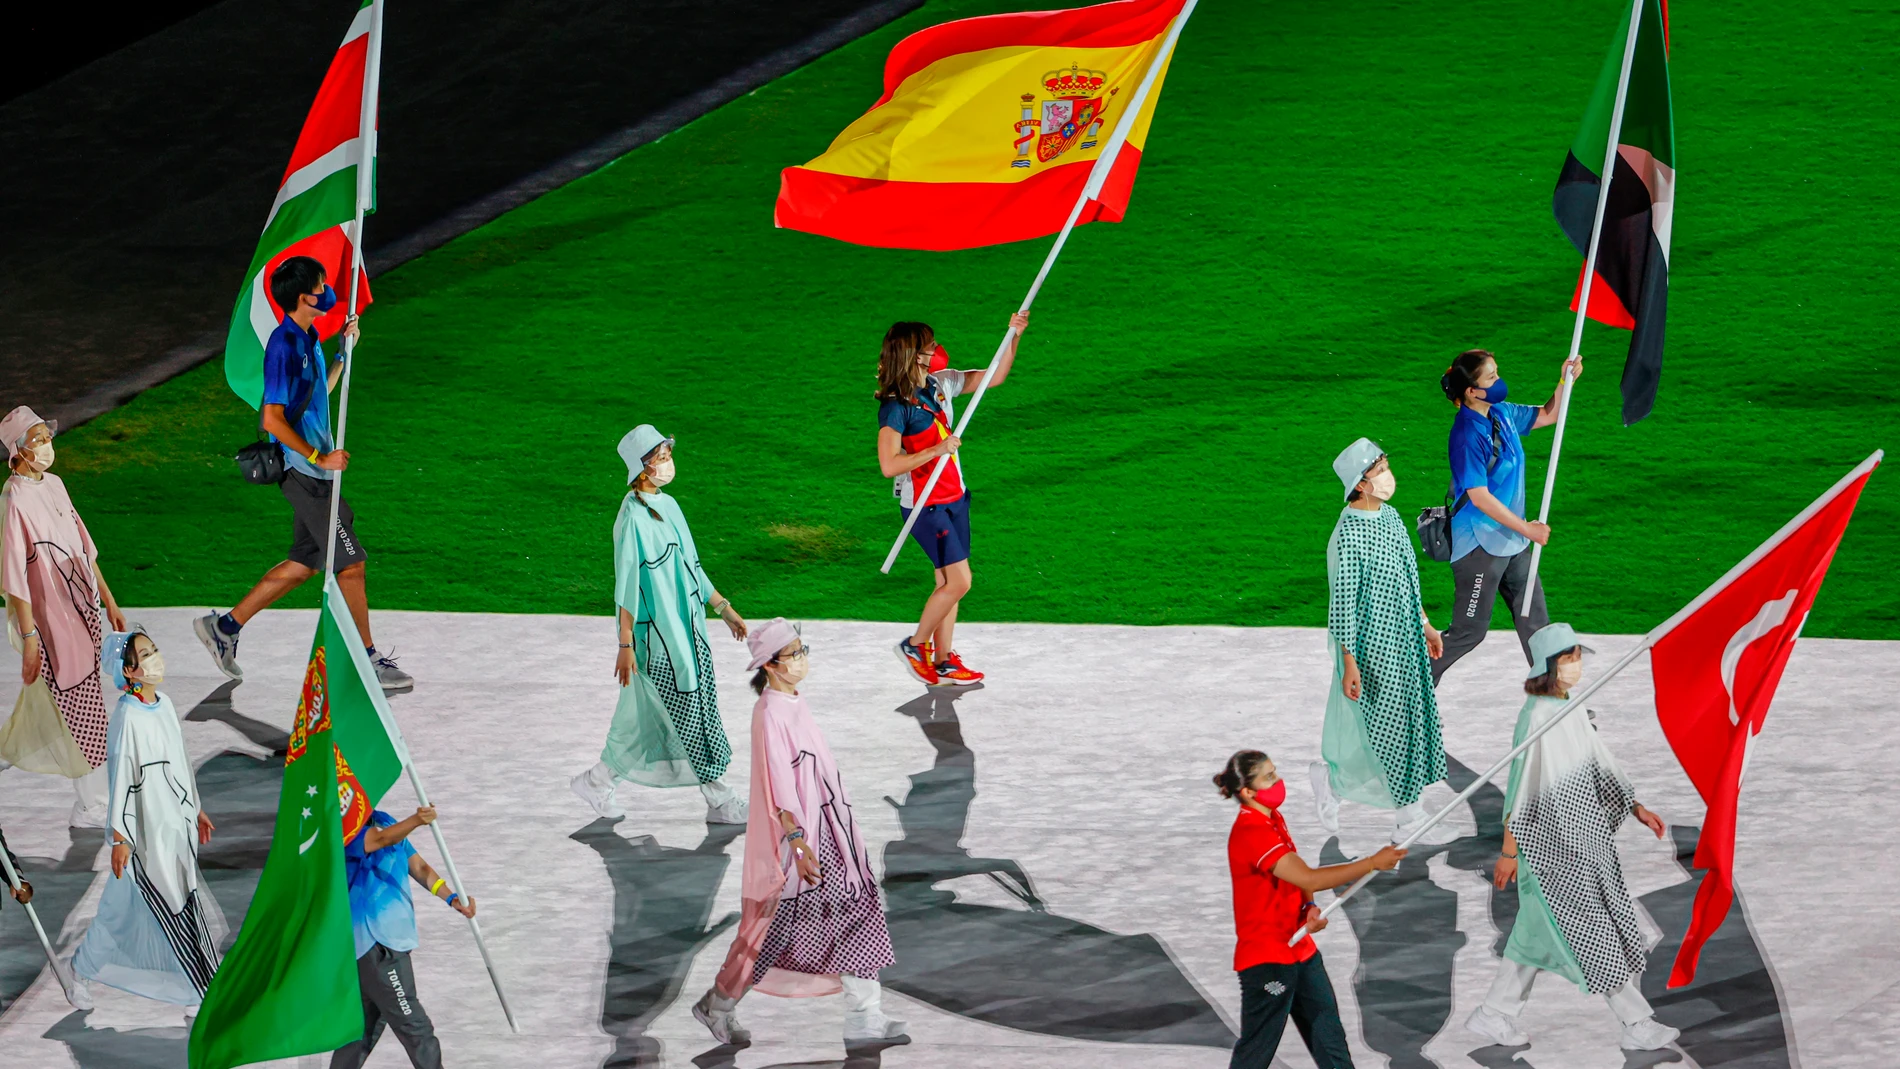 La abanderada española, la karateca Sandra Sánchez, ondea la bandera de España durante la ceremonia de clausura